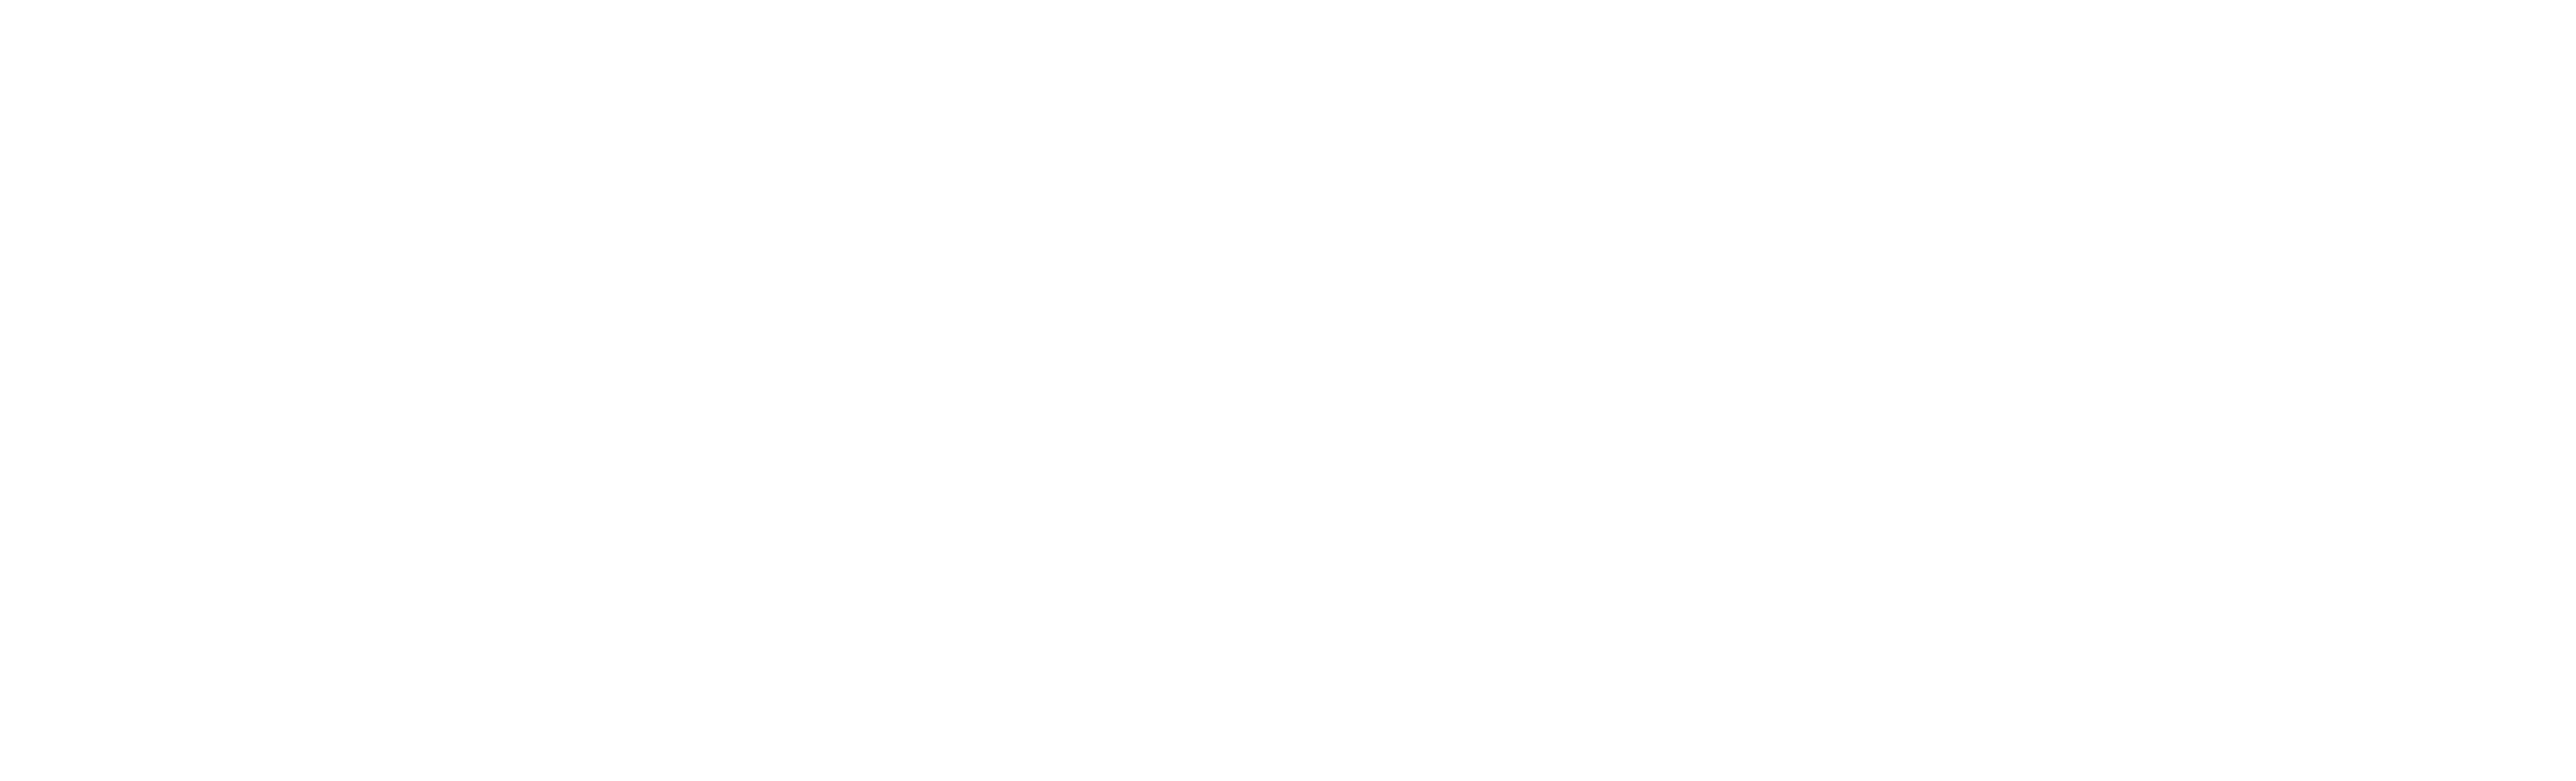 Elephantic - Tienda de electrónica